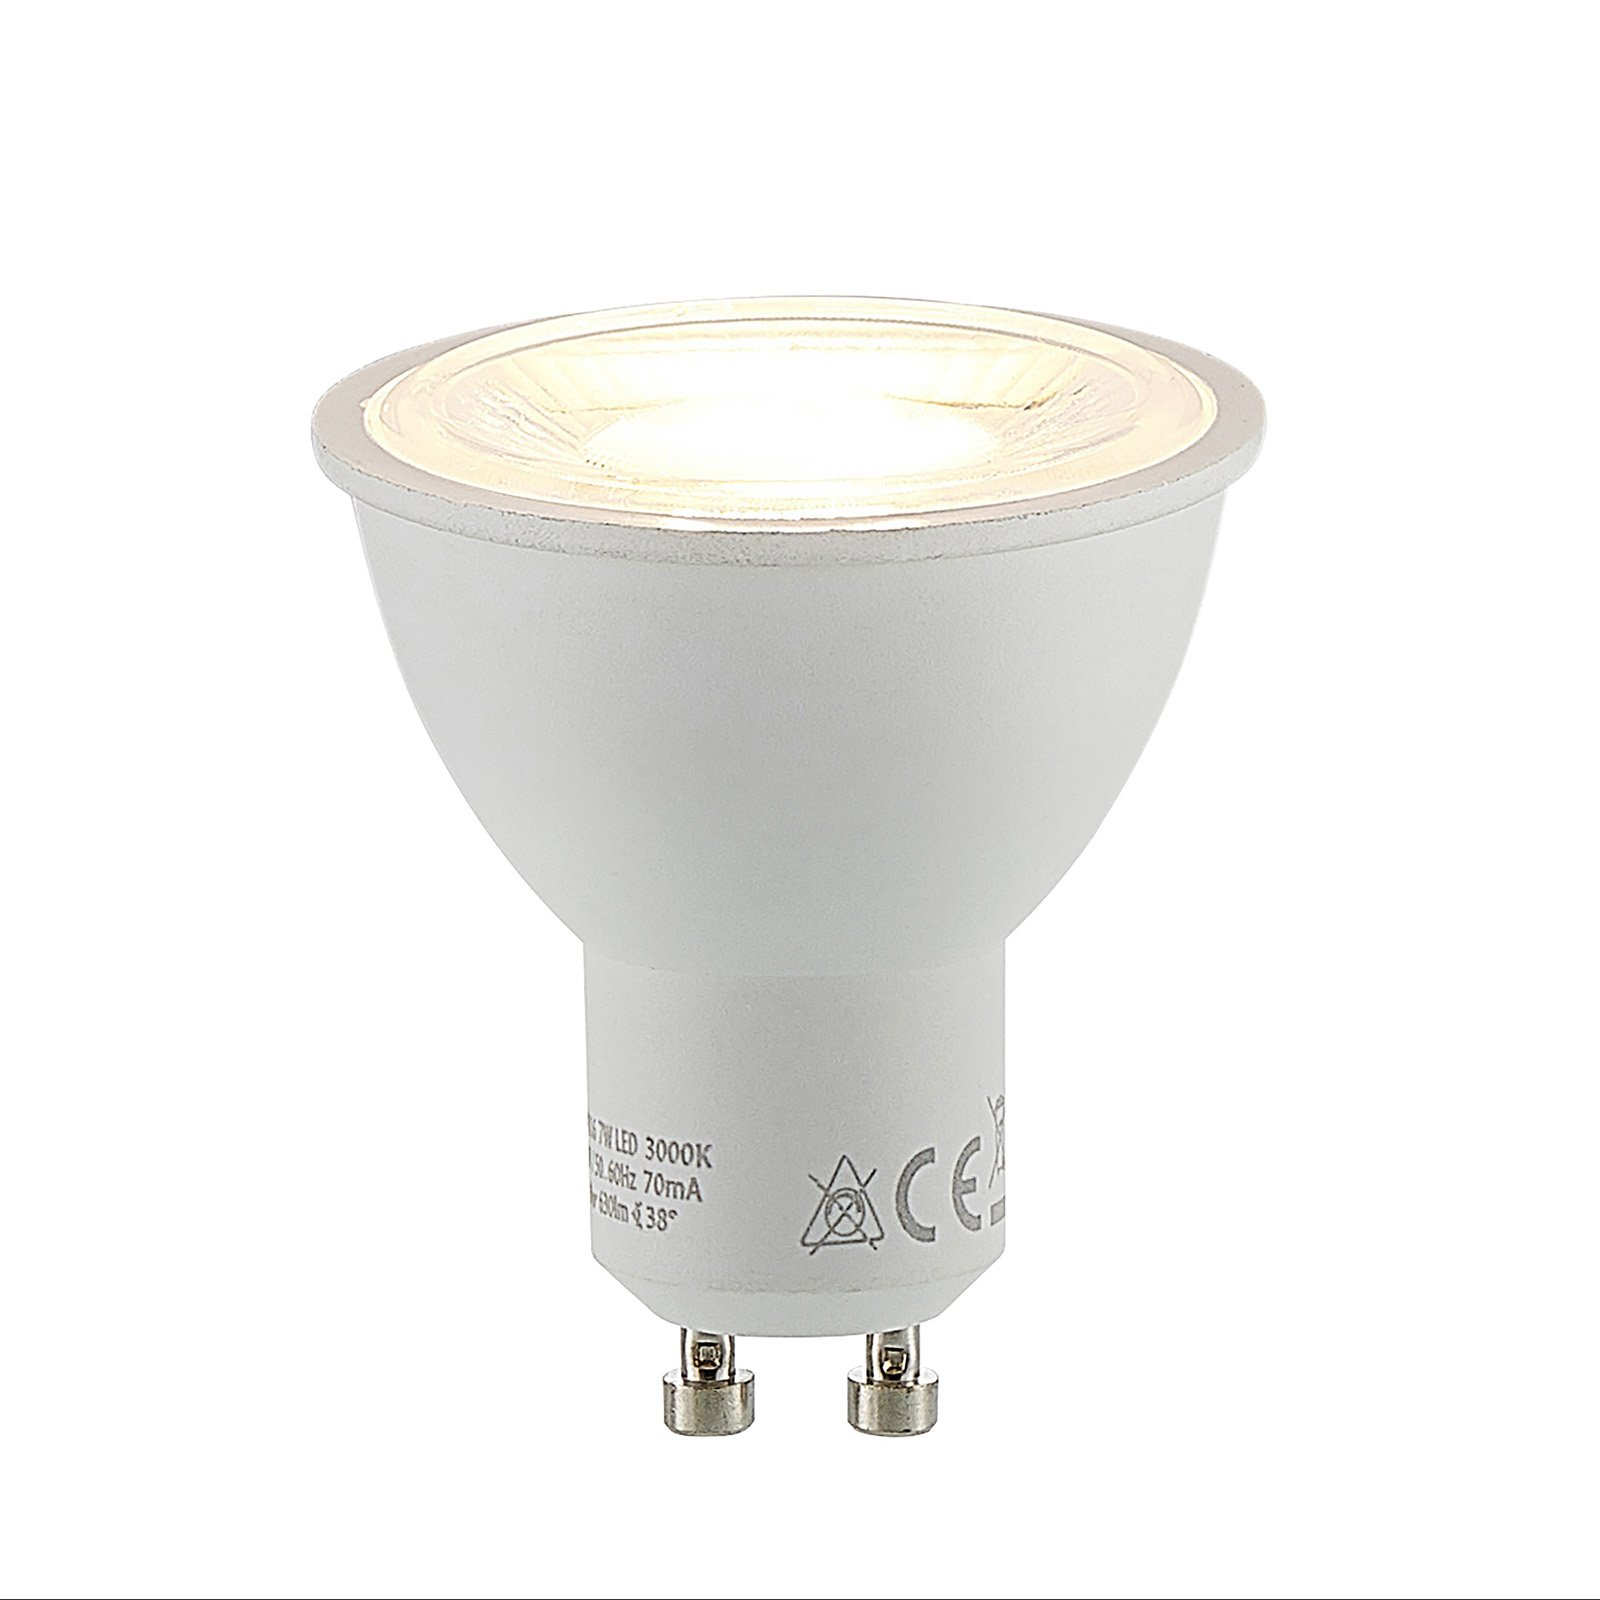 Reflector LED bulb GU10 7 W 3,000 K 700 lumens 38°